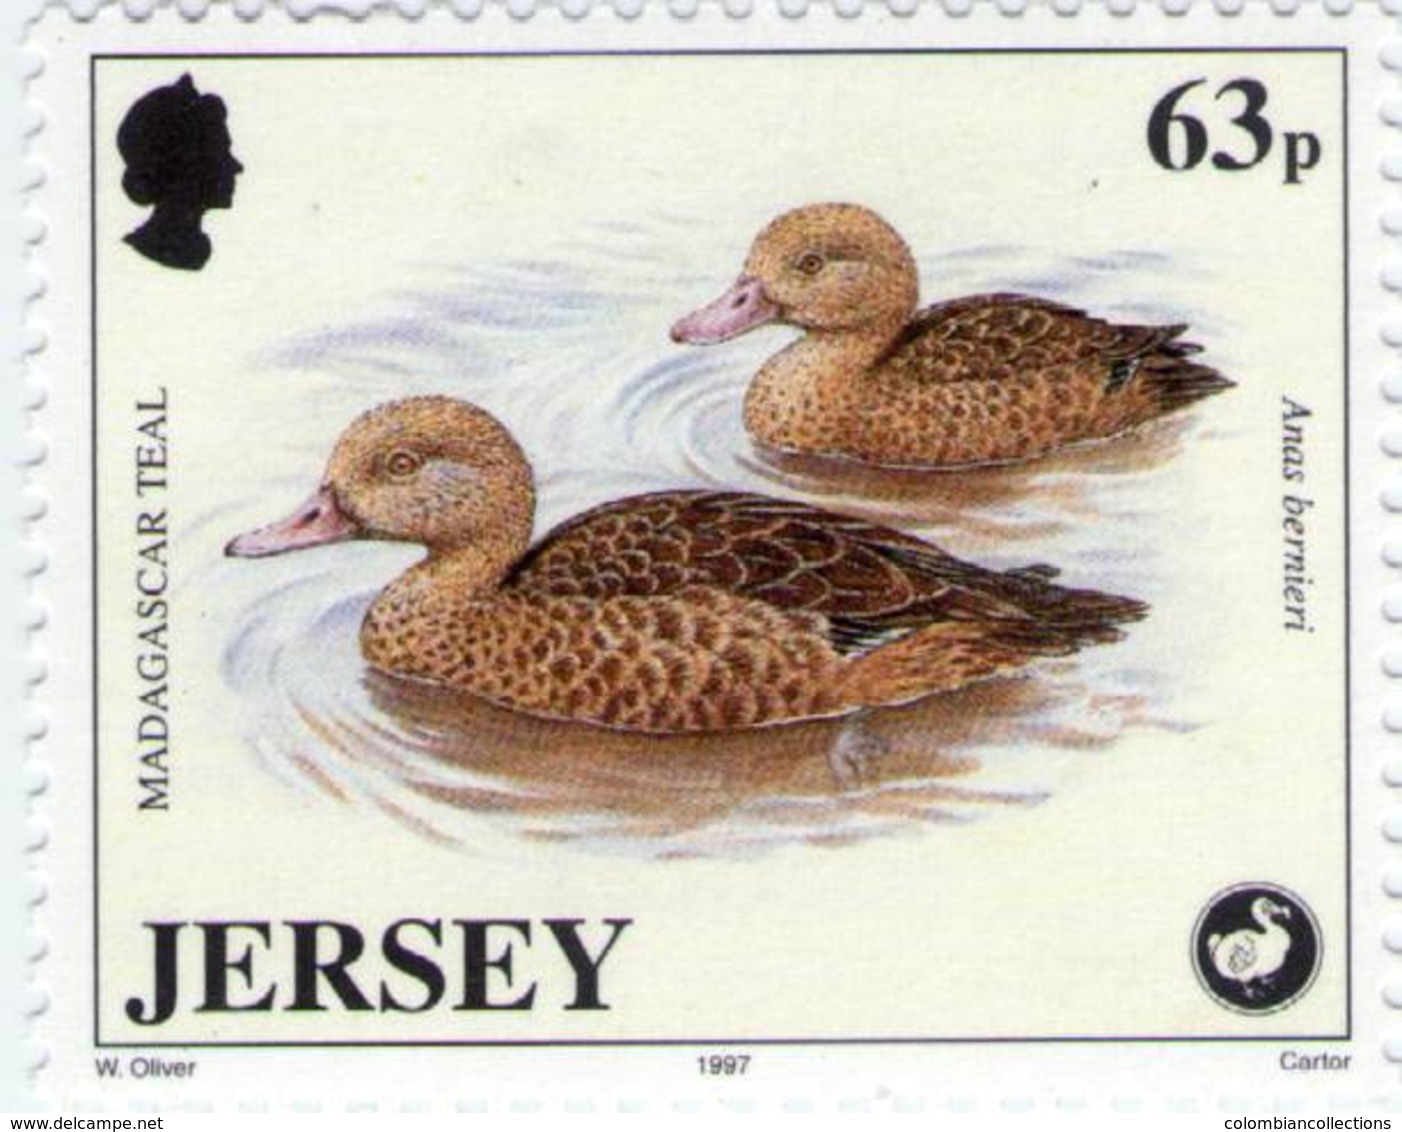 Lote J2, Jersey, 1997, Sello, Stamp, 5 V, Wildlife Preservation, Bird, Frog, Pigmy Hog - Jersey